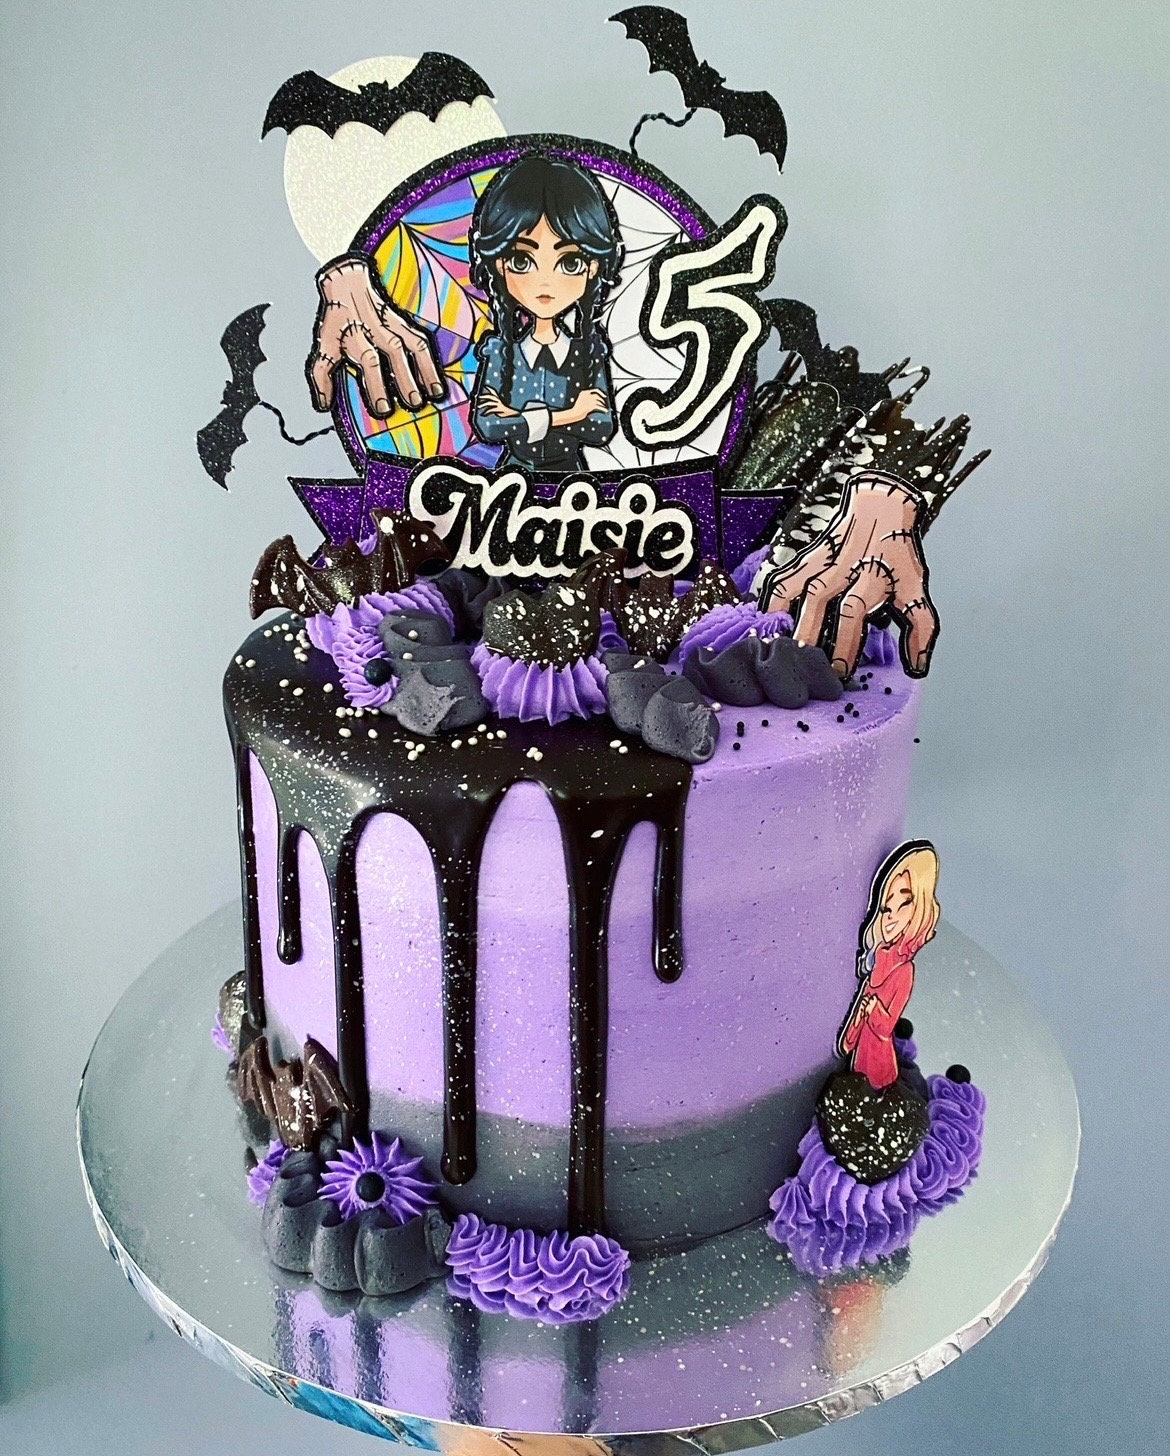 Décoration de gâteau personnalisée sur le thème de Wednesday Addams  Anniversaire Personnalisé Famille Adams Chose 3D -  Canada